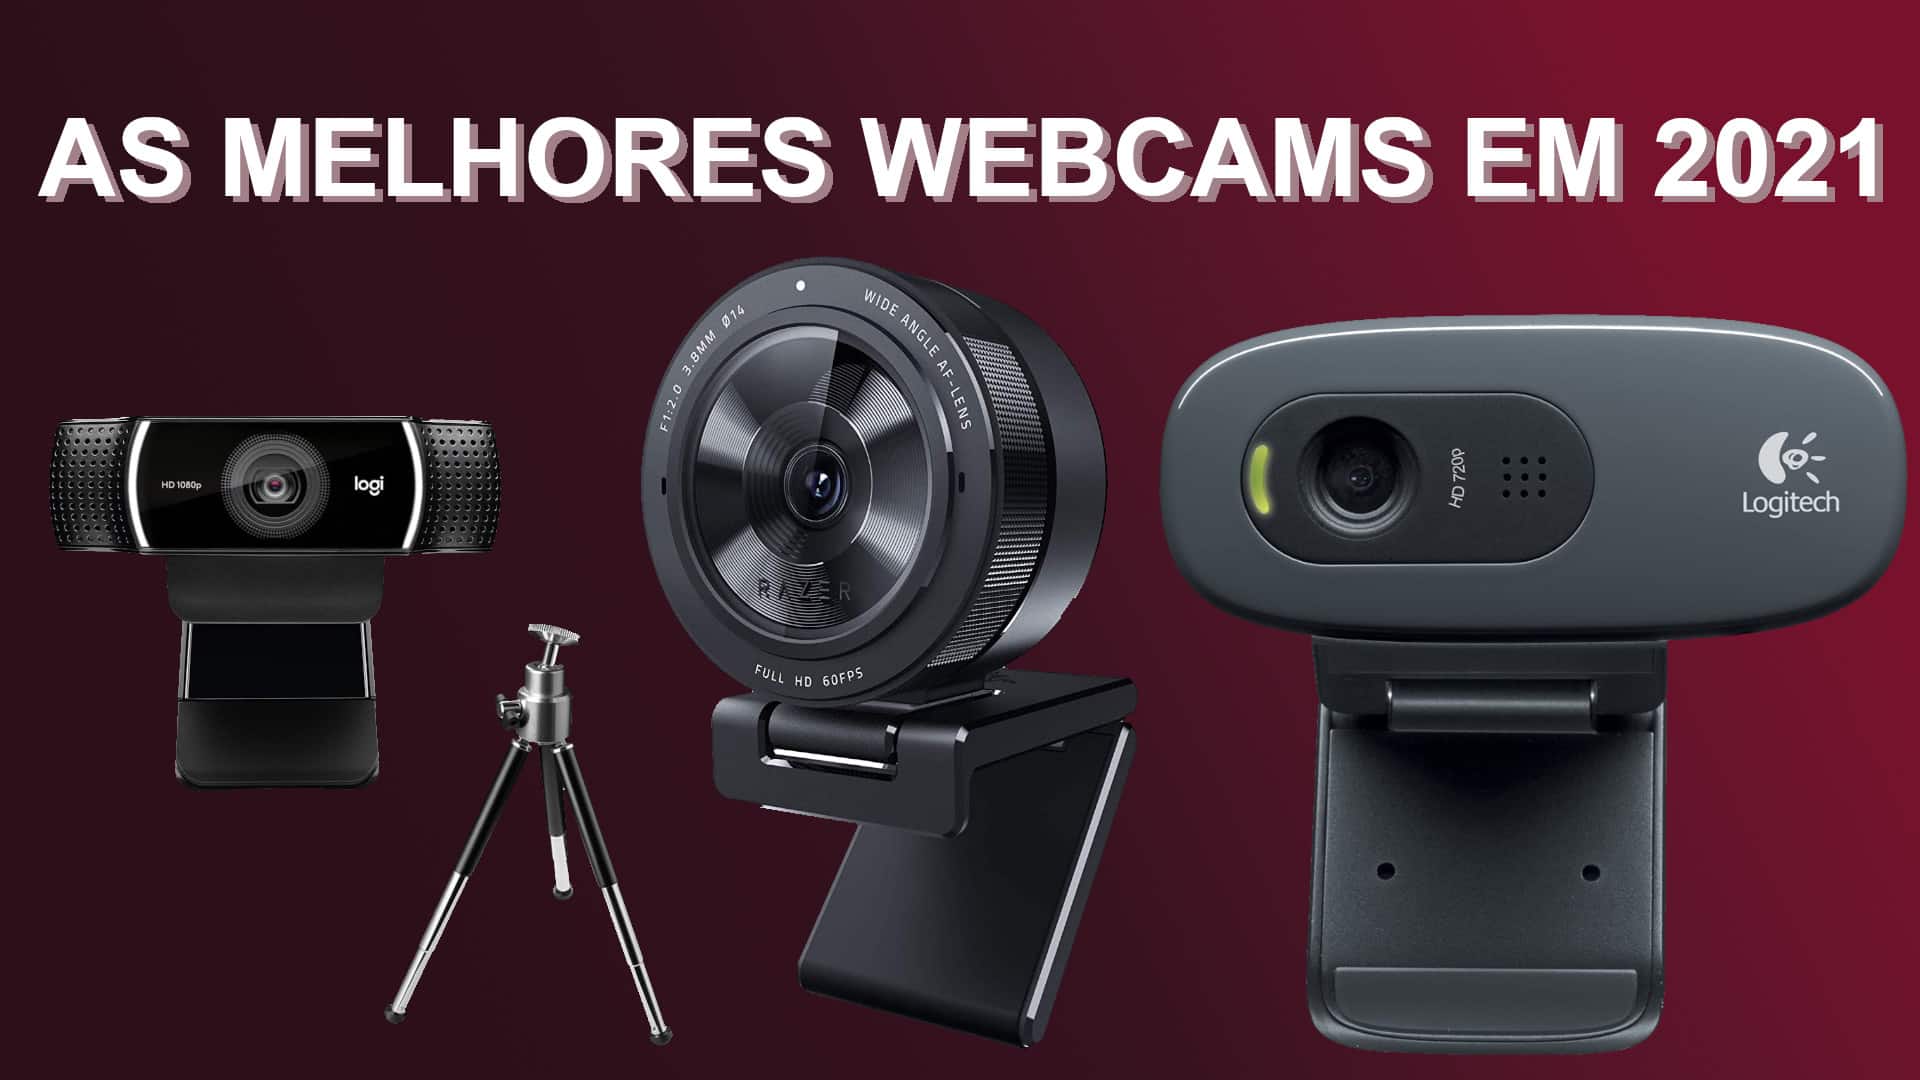 As melhores webcams em 2021 | abff8315 capa | hardware, logitech, razor, tecnologia, webcam | melhores webcams dicas/guias